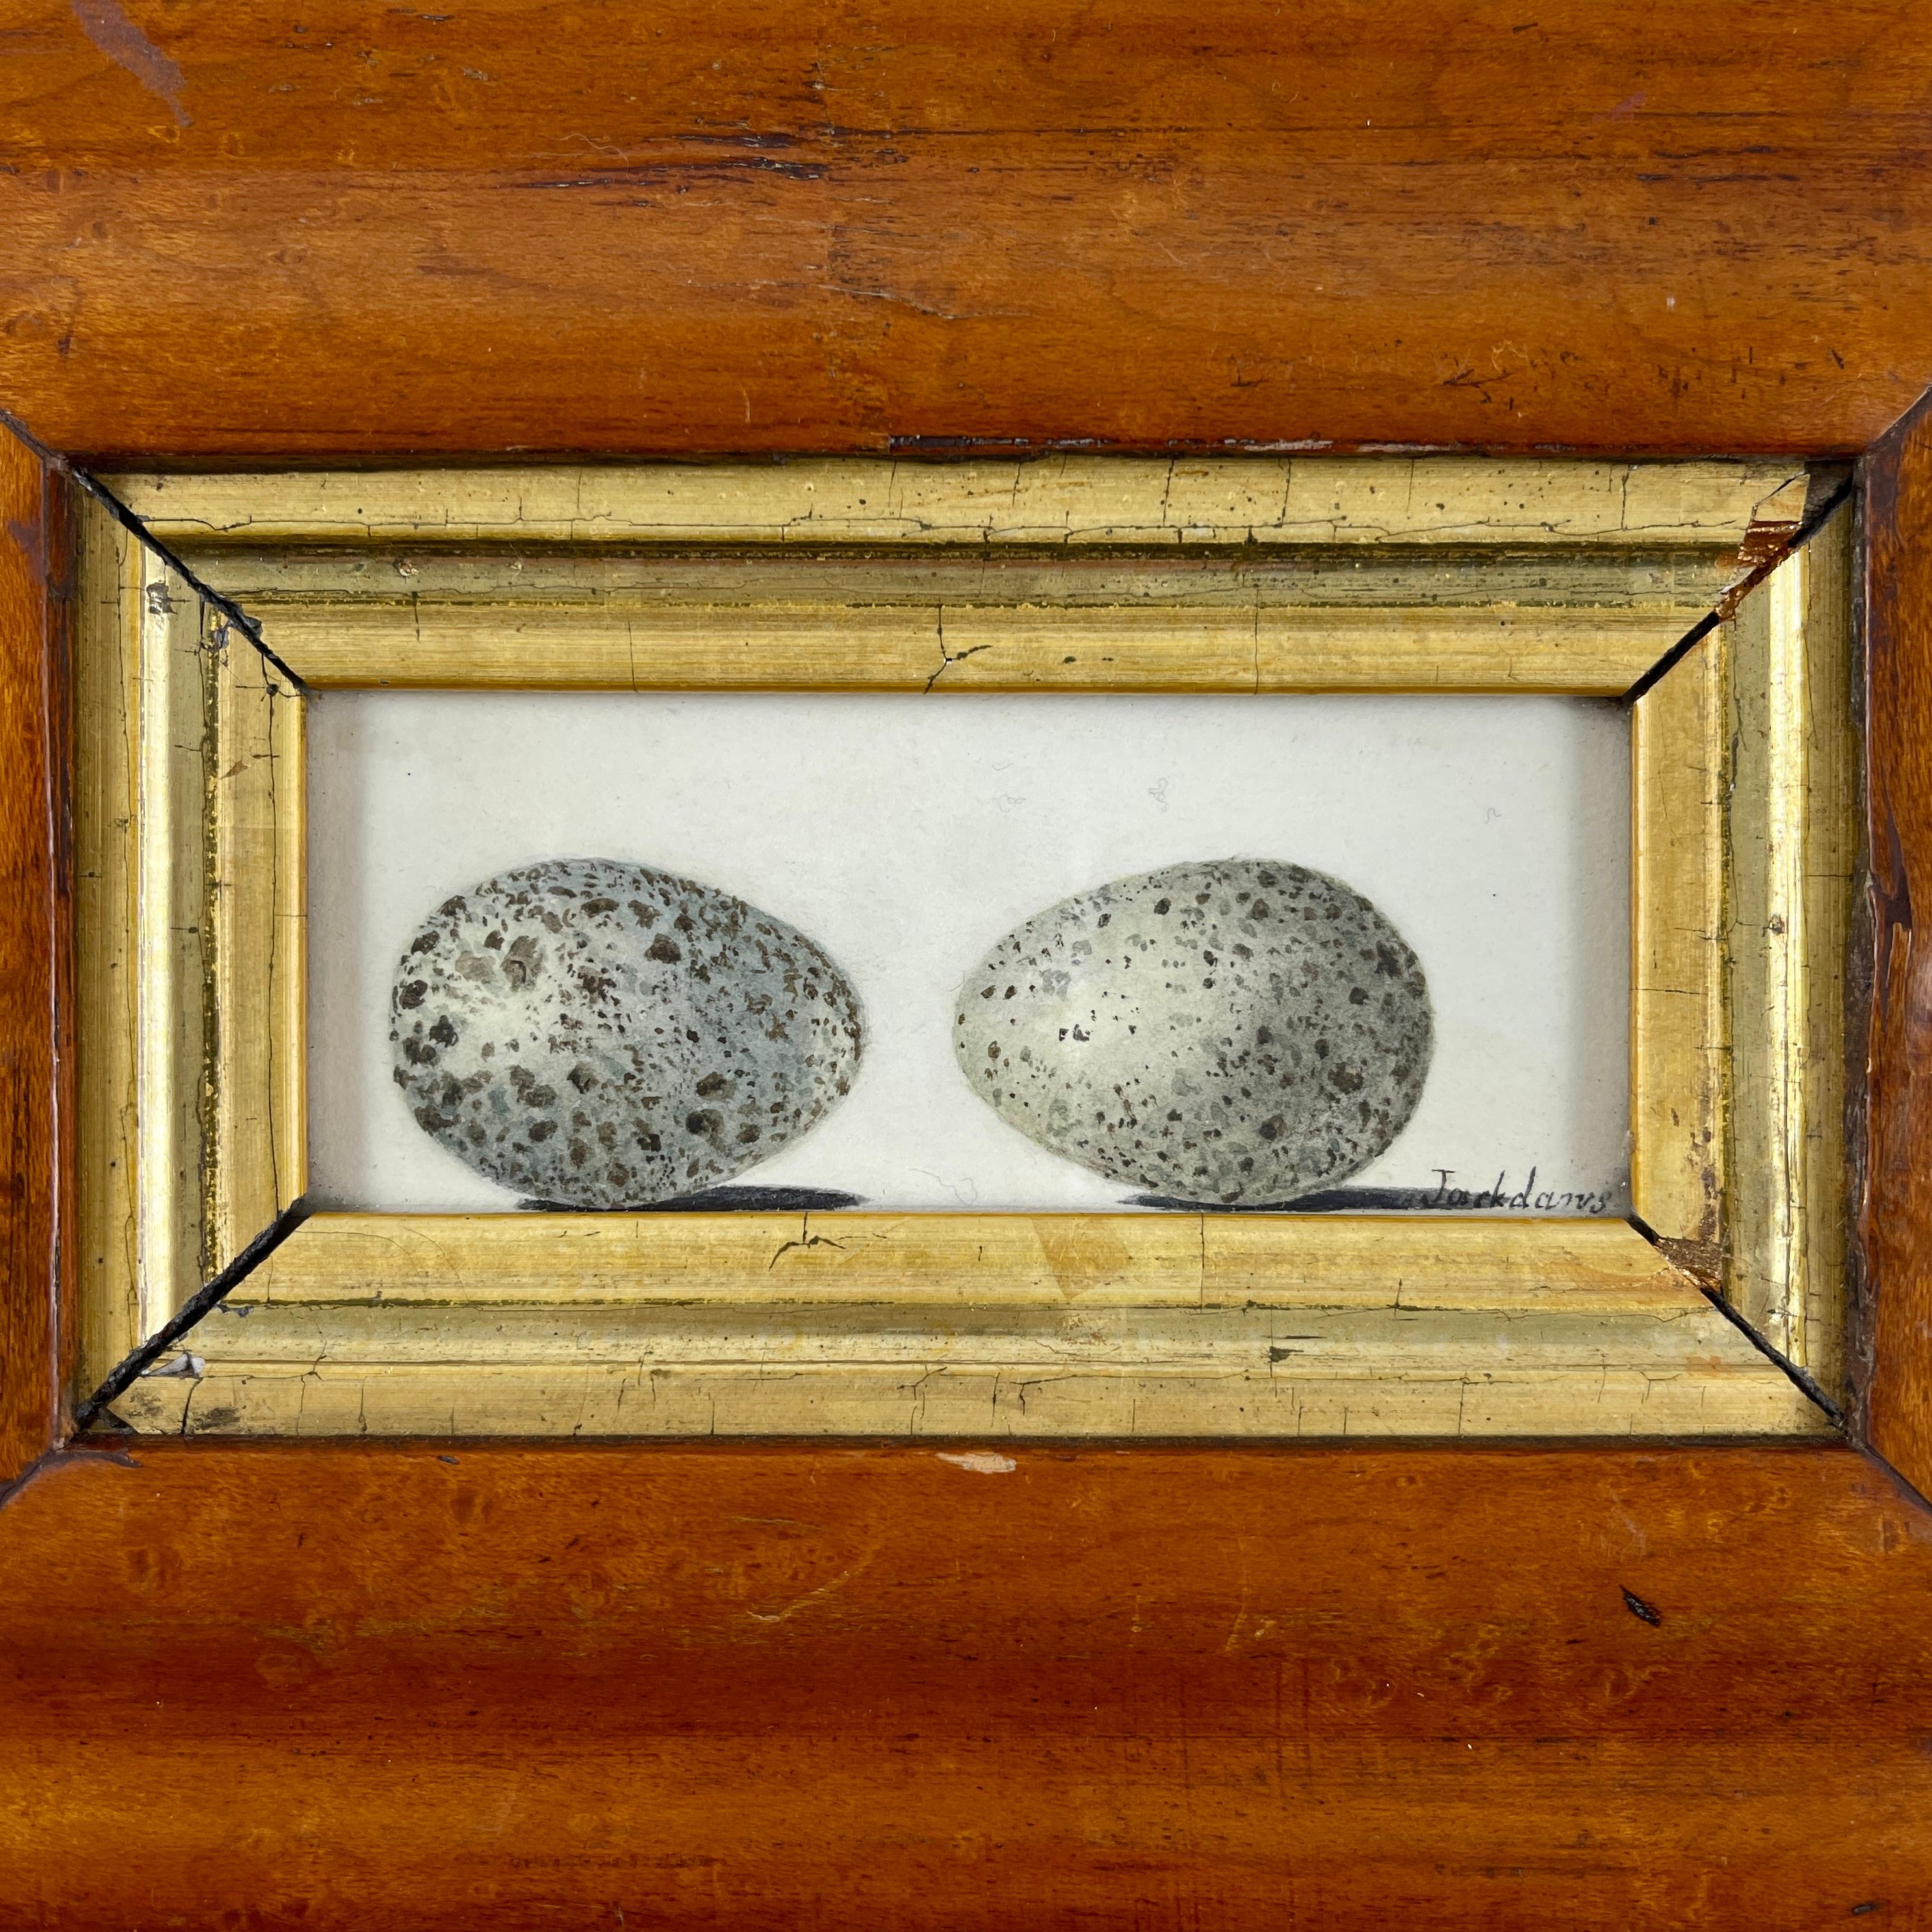 Une aquarelle originale de l'école britannique de la période Régence représentant deux œufs d'oiseaux, montée dans un cadre d'époque géorgienne en érable piqué - Circa 1835.

Ces aquarelles ont été largement peintes par des jeunes filles issues de